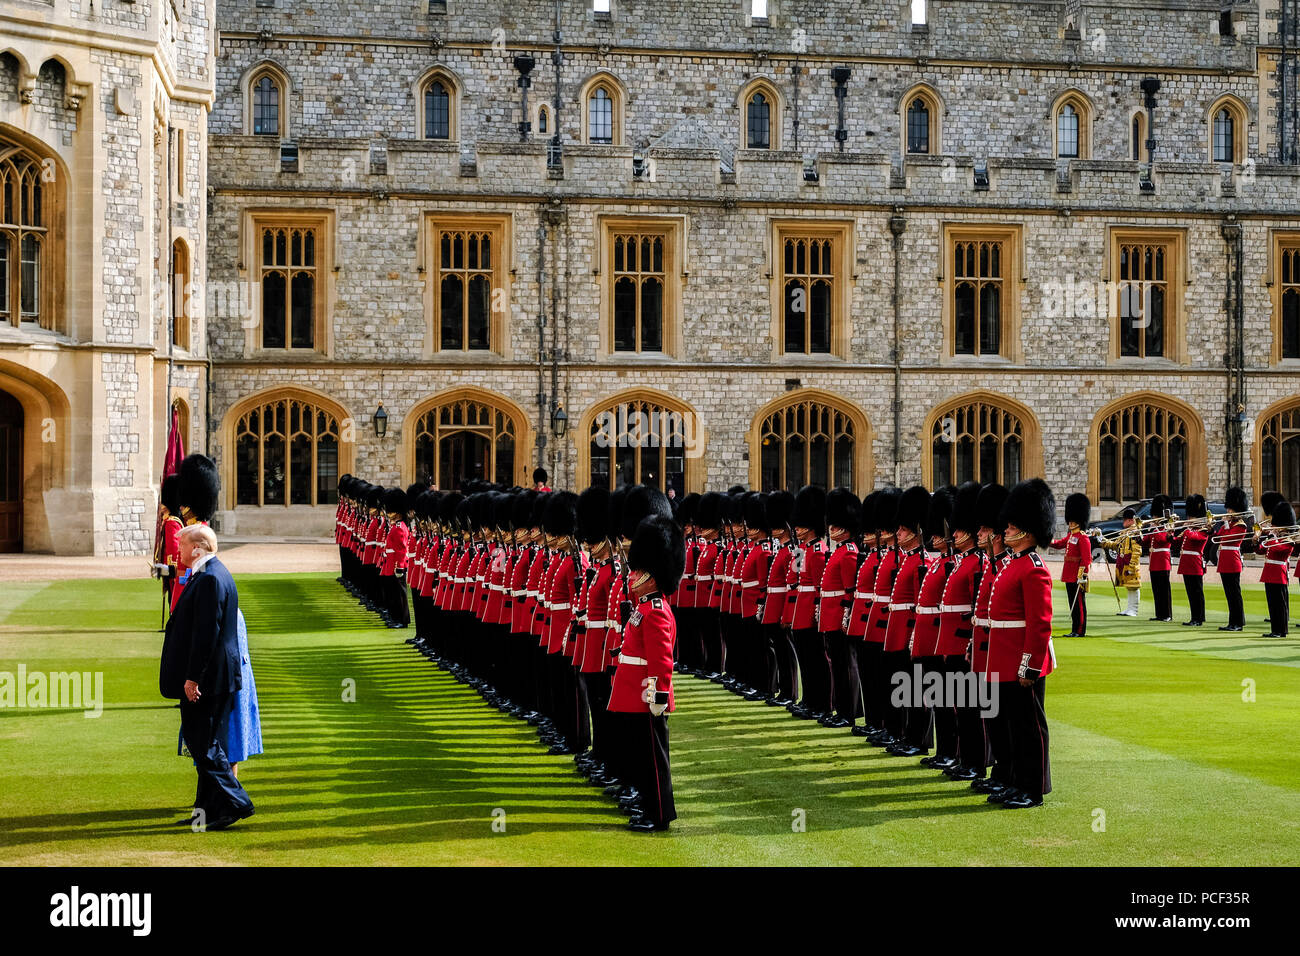 Die Königin trifft der Präsident der Vereinigten Staaten von Amerika und Frau Trump am Freitag, 13. Juli 2018 auf Schloss Windsor, Windsor. Im Bild: SEINE KÖNIGLICHE HOHEIT, Queen Elizabeth II. mit Präsident Trump prüfen die Ehrengarde - Coldstream Guards. Stockfoto